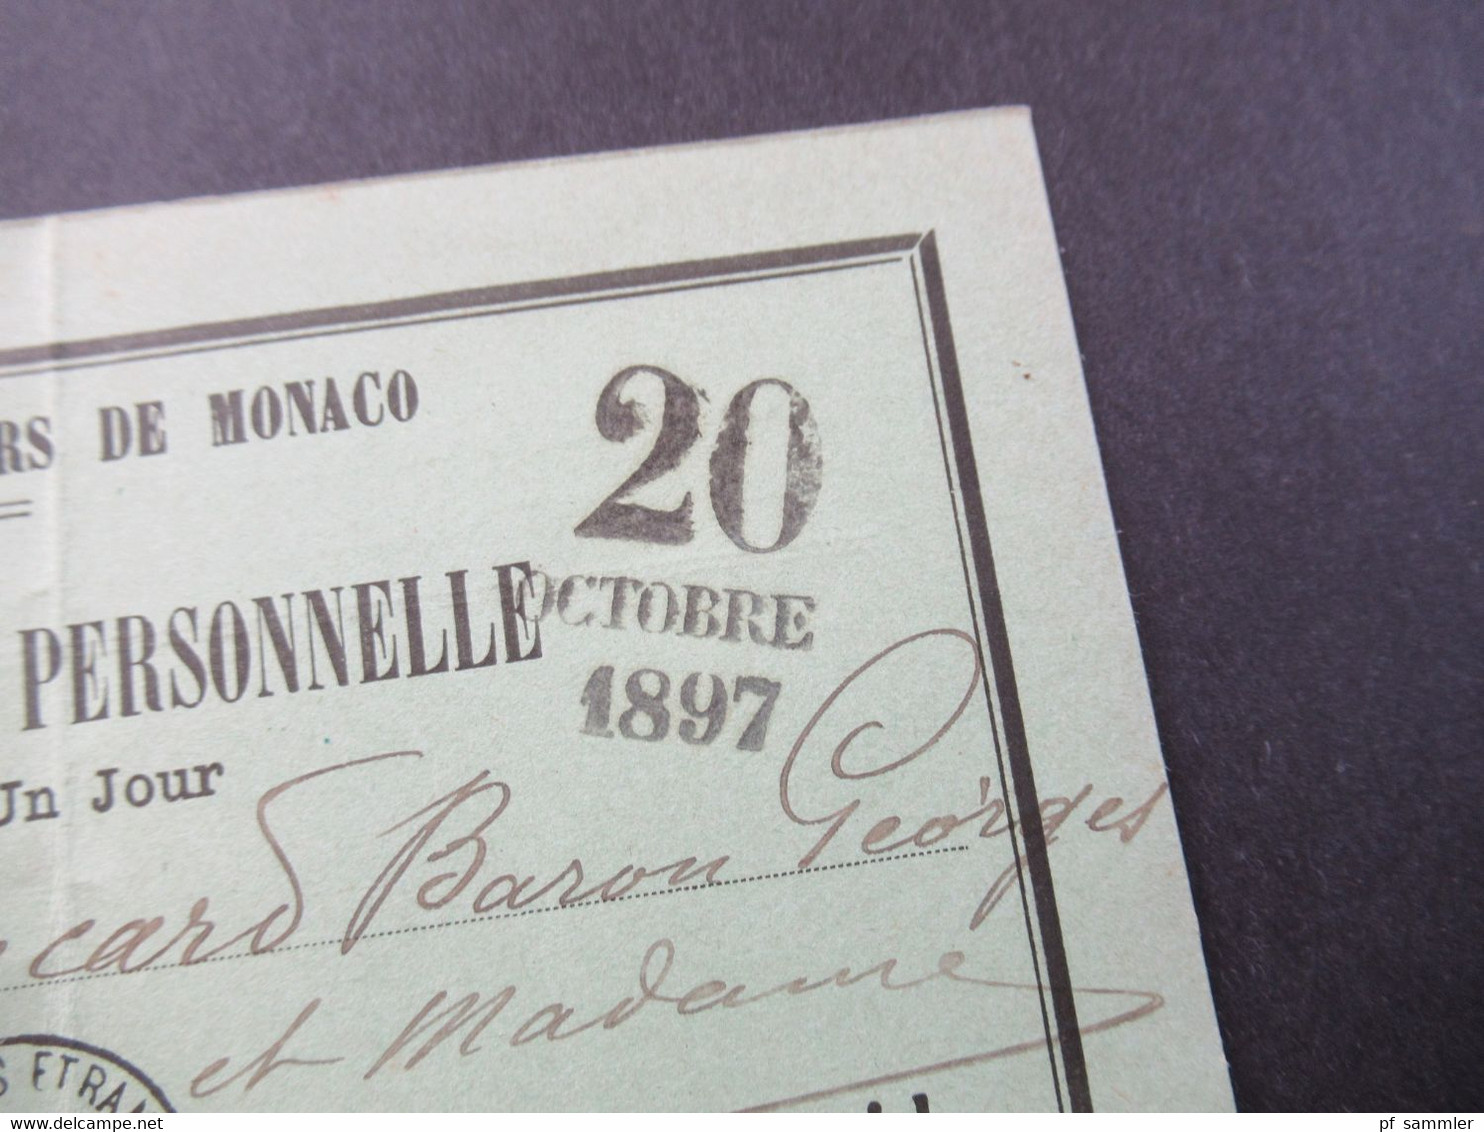 Monaco 20.10.1897 Carte D'Admission Personelle Cercle Des Etrangers De Monaco Valabe Pour Un Jour - Briefe U. Dokumente